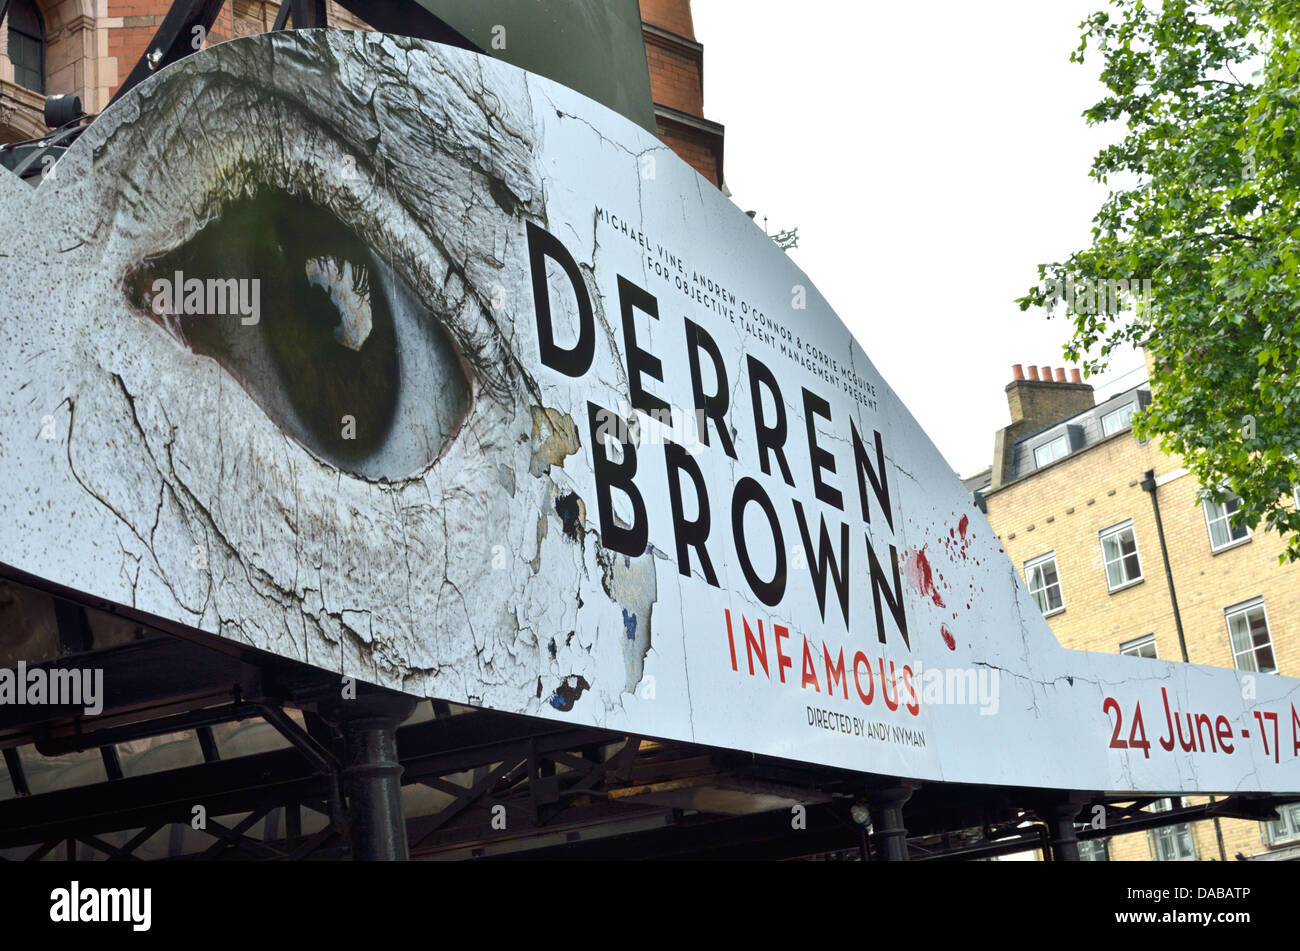 Les panneaux publicitaires géants Derren Brown show 'infâme', Palace Theatre, Londres, UK Banque D'Images